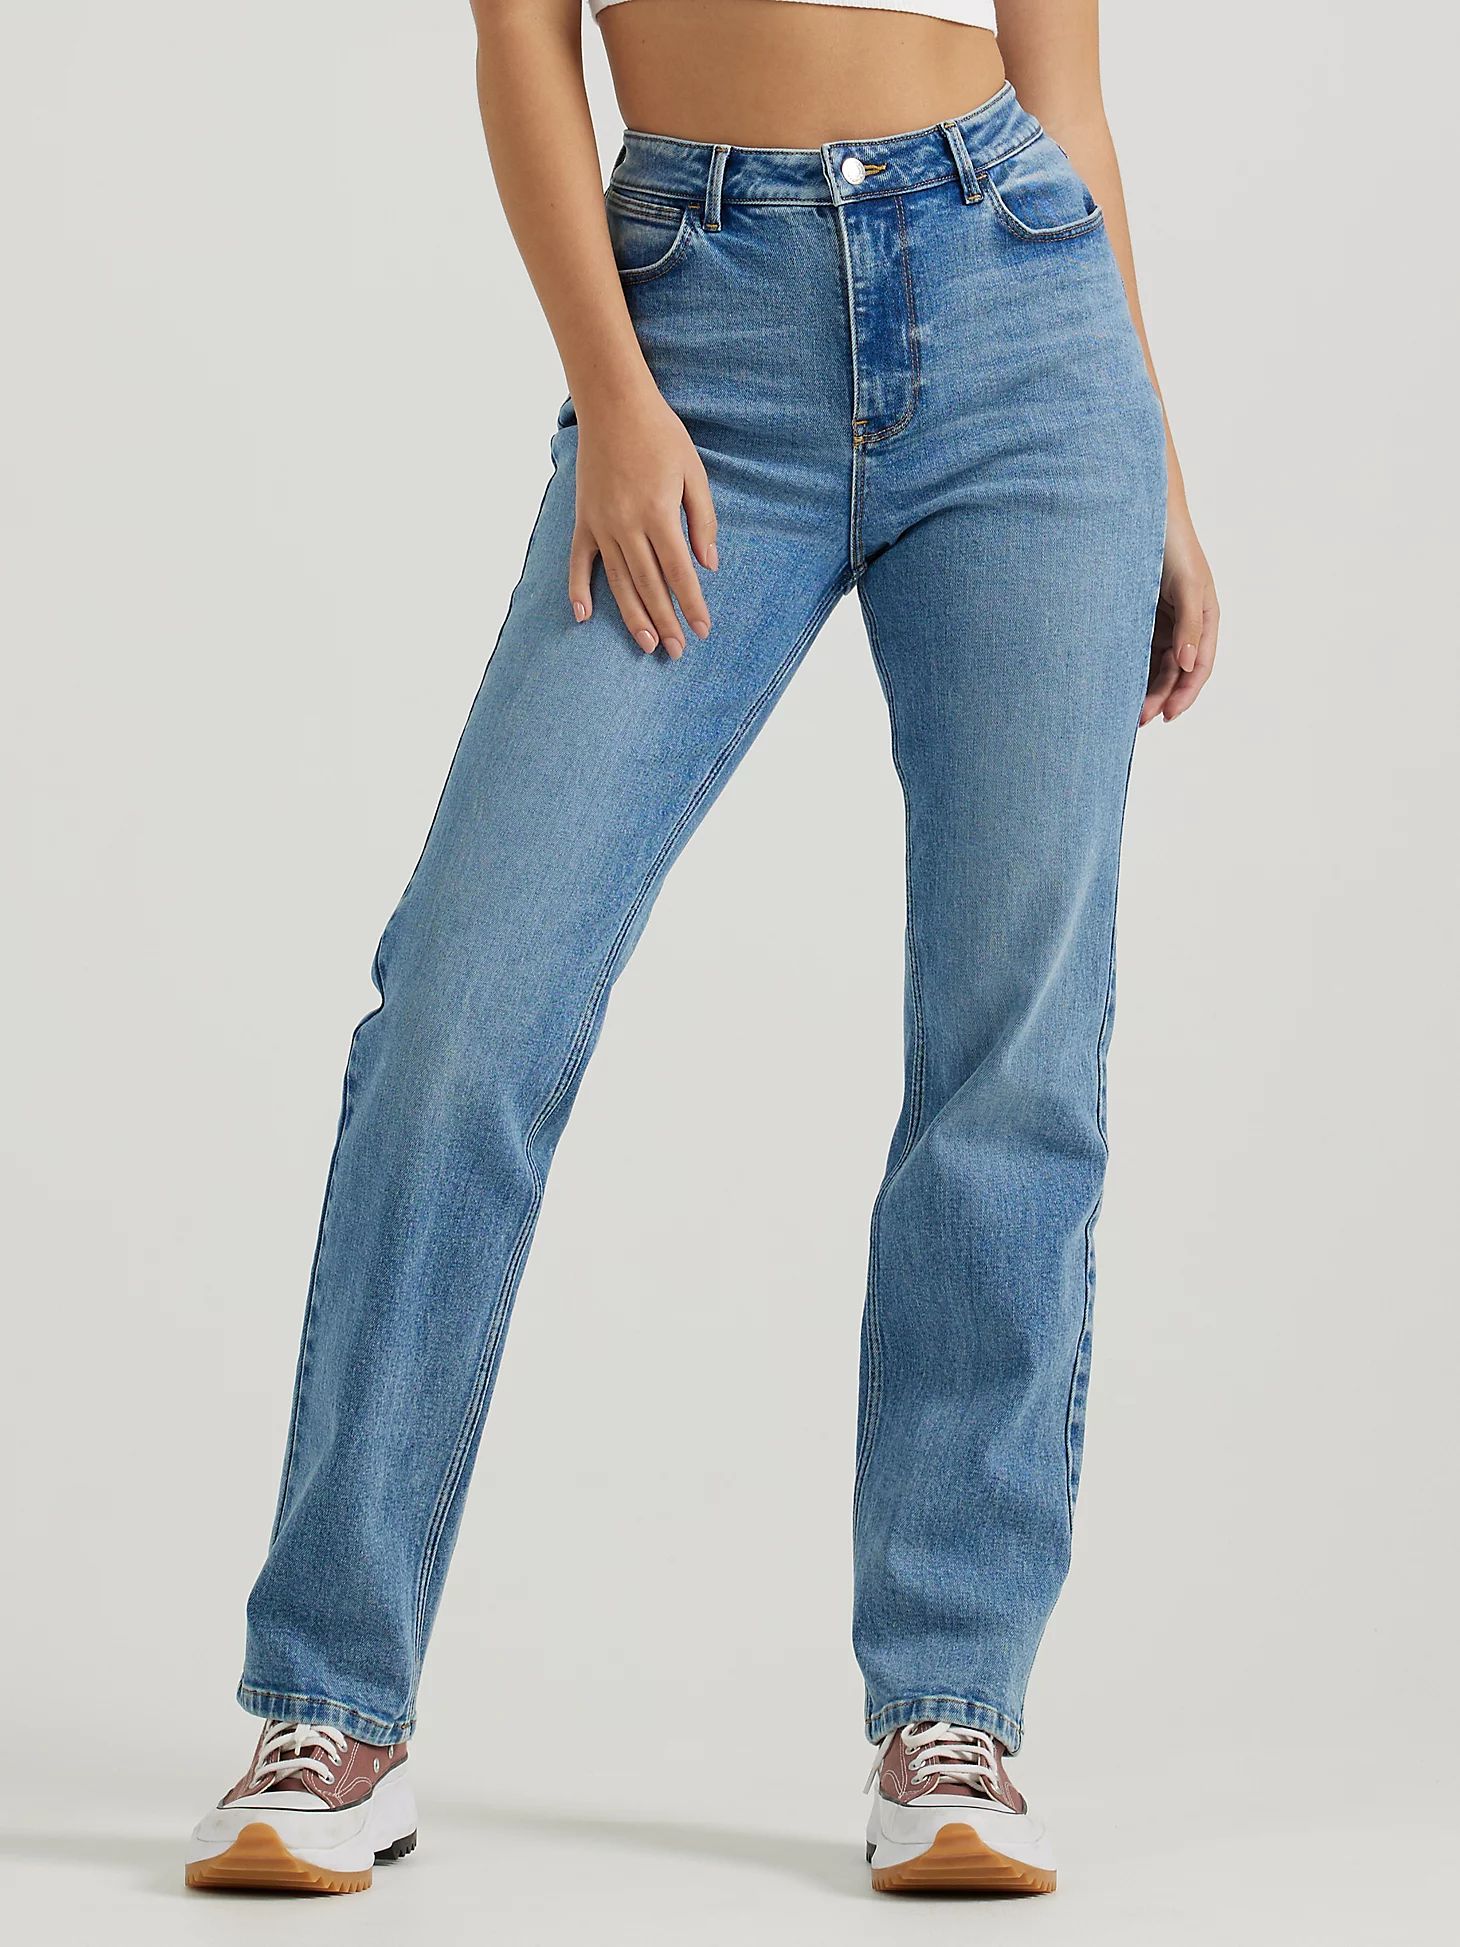 Women's Wrangler® High Rise True Straight Leg Jean in Misty Blue | Wrangler